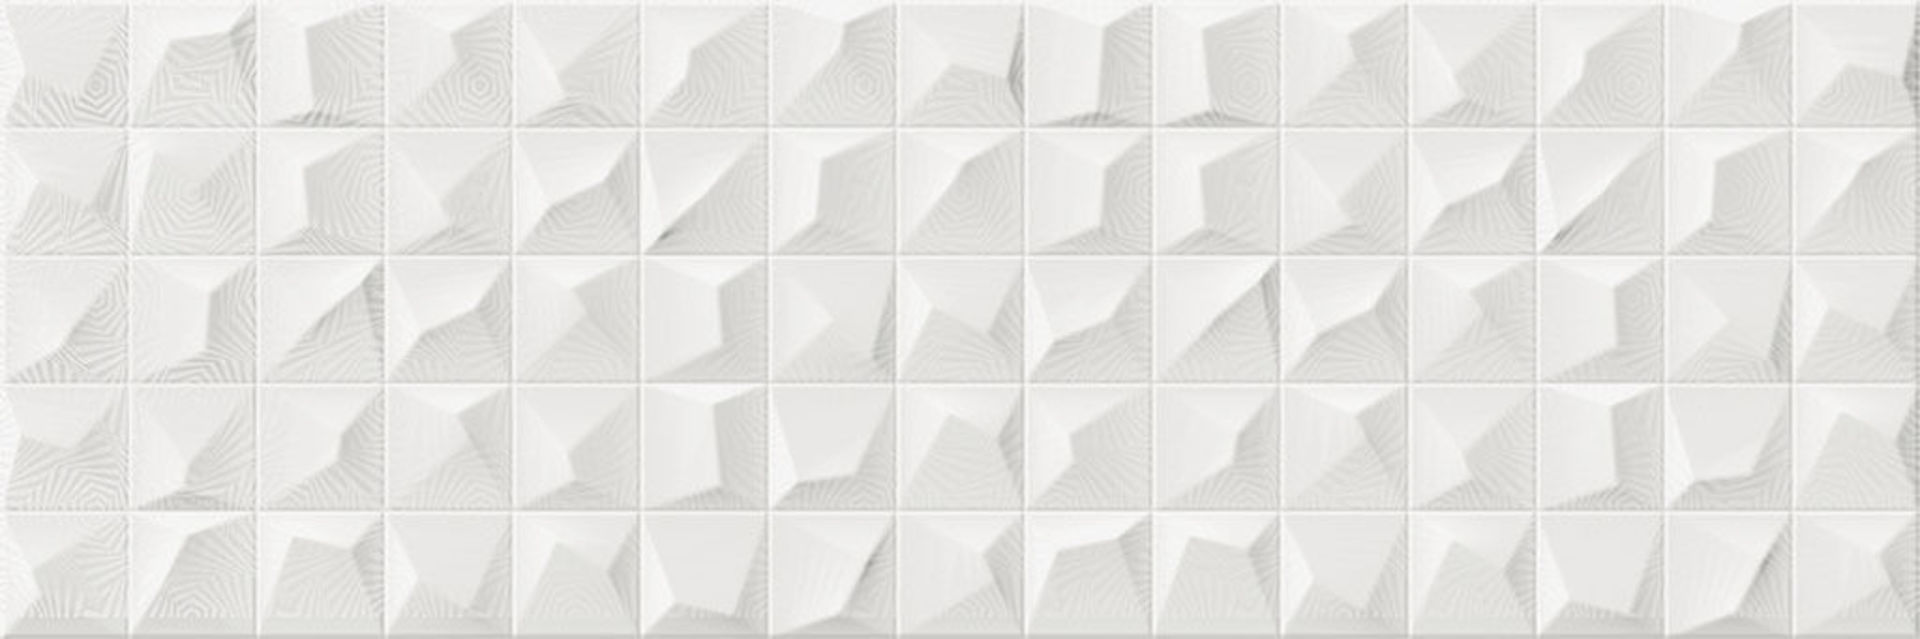 Керамическая плитка CROMATICA KLEBER WHITE BRILLO 25*75 / коллекция CROMATICA / производитель CIFRE CERAMICA / страна Испания